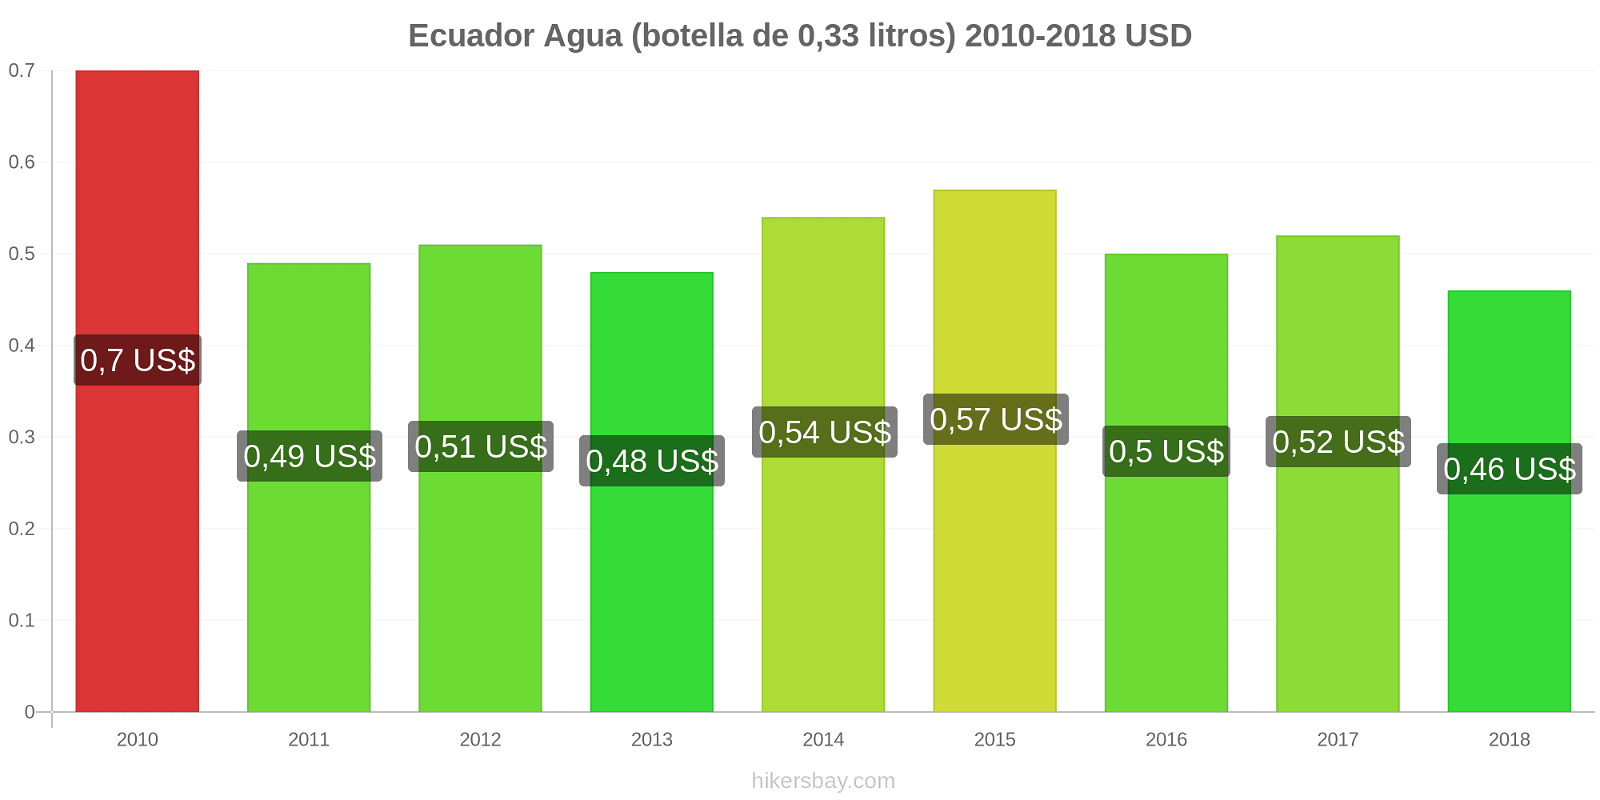 Ecuador cambios de precios Agua (botella de 0.33 litros) hikersbay.com